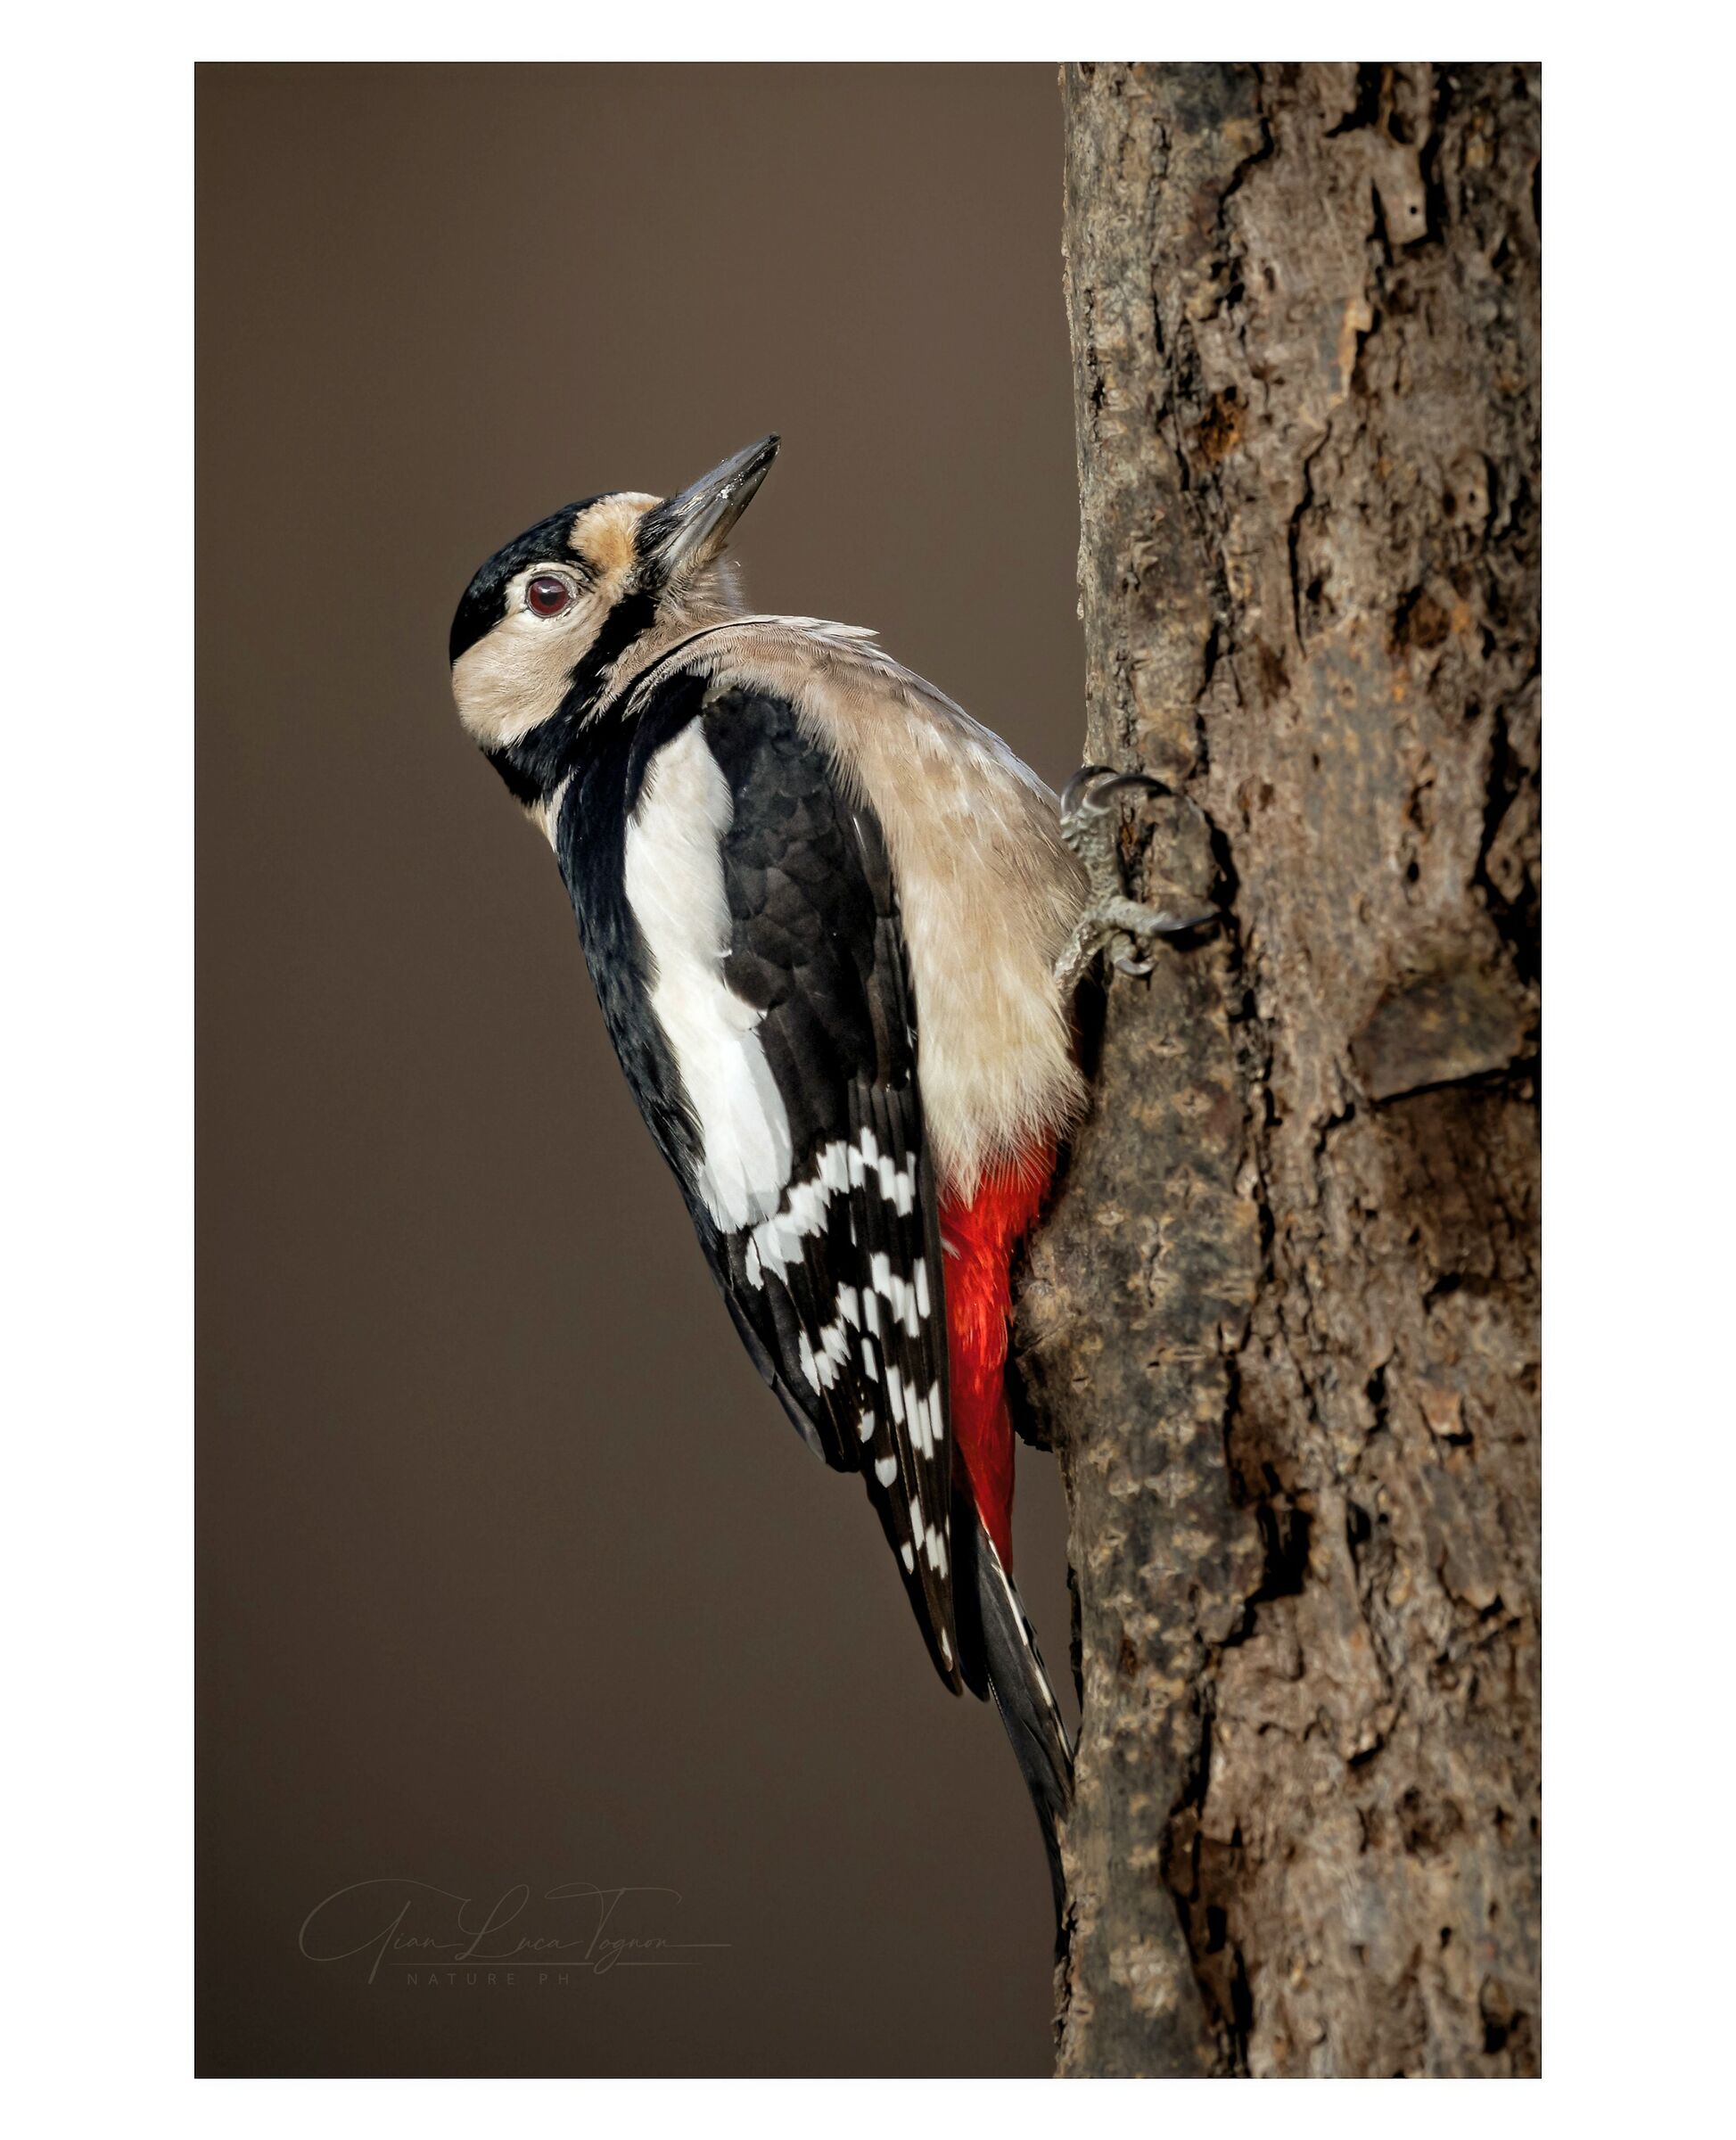 picchio in pausa | resting woodpecker...